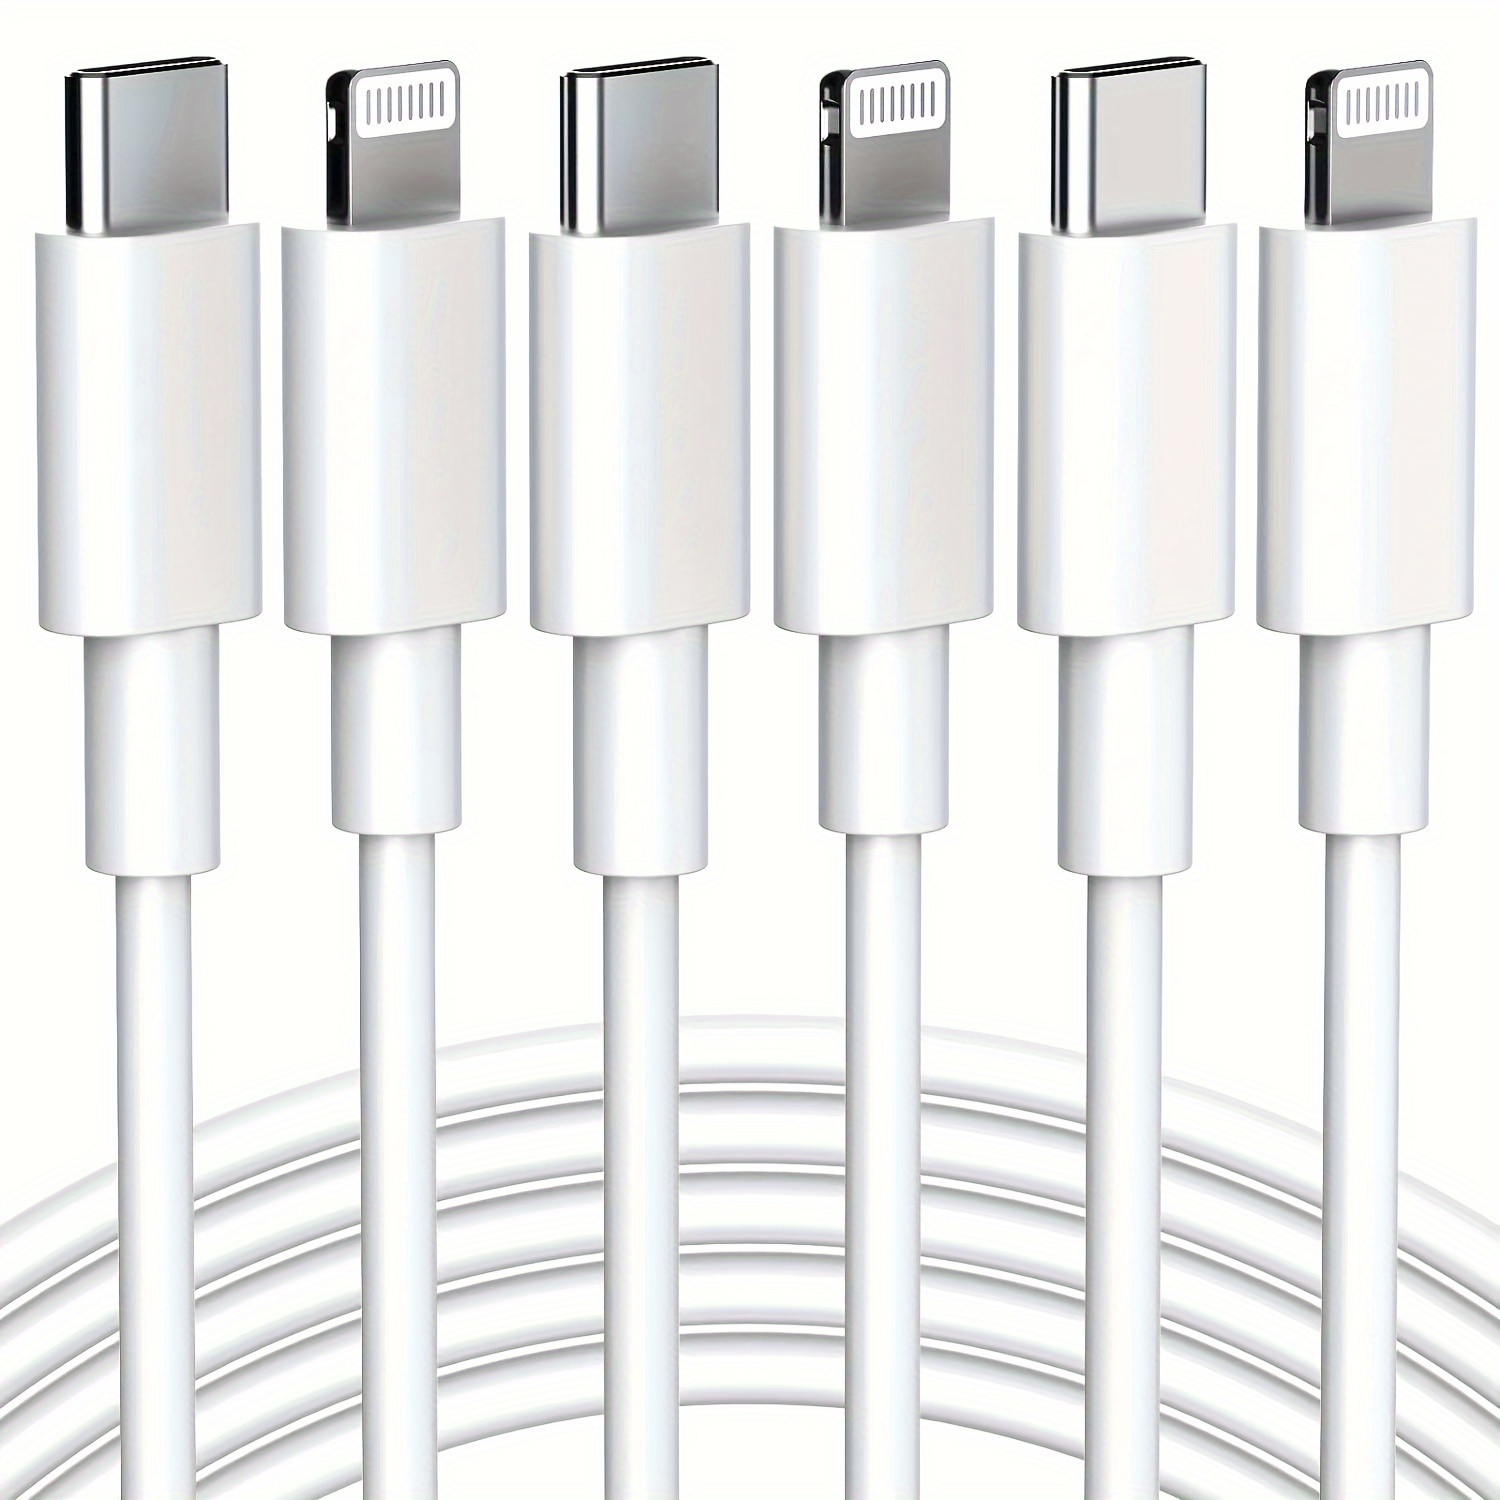 Cargador rápido para iPhone 14, 13, 12, 11 [certificado MFi], cable  Lightning de carga rápida de 10 pies de largo con bloque de cargador USB C  de 20 W